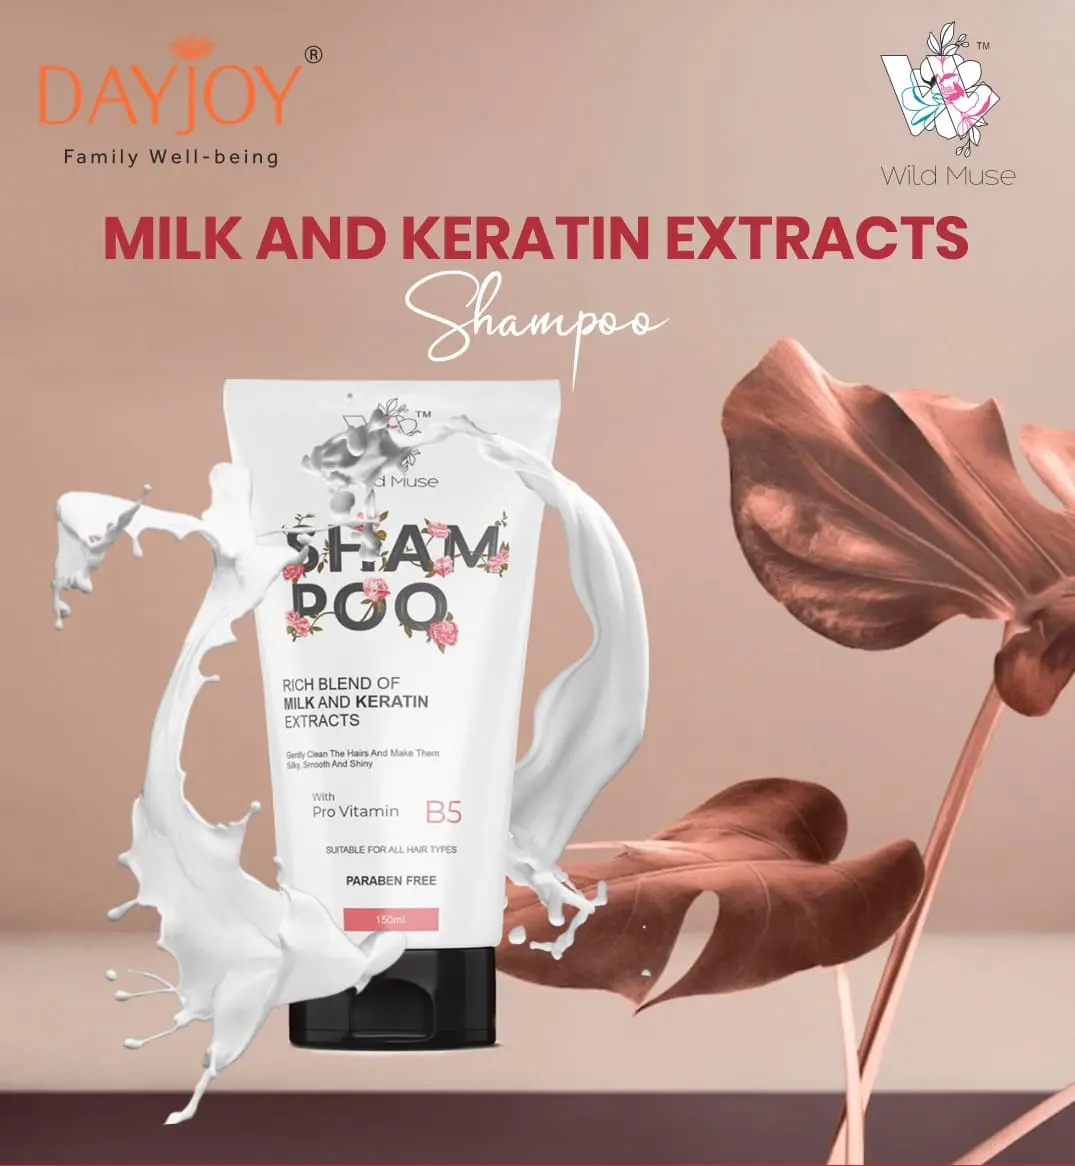 Wild Muse Milk & Keratin Extracts Shampoo- paraben free shampoo